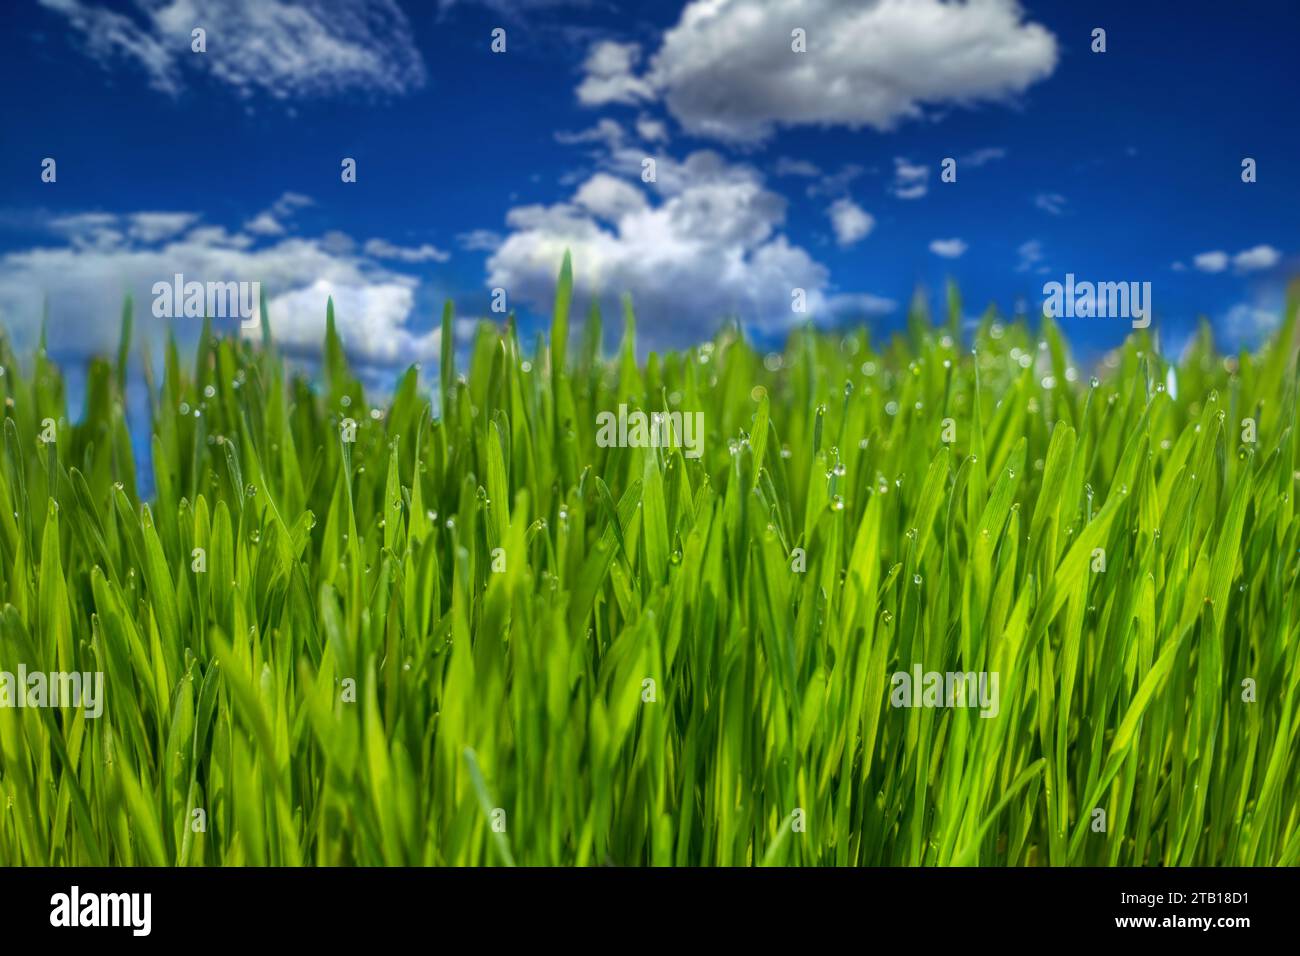 Makro aus echtem grünem Rasen, blauem Himmel mit Wolken im Hintergrund Stockfoto